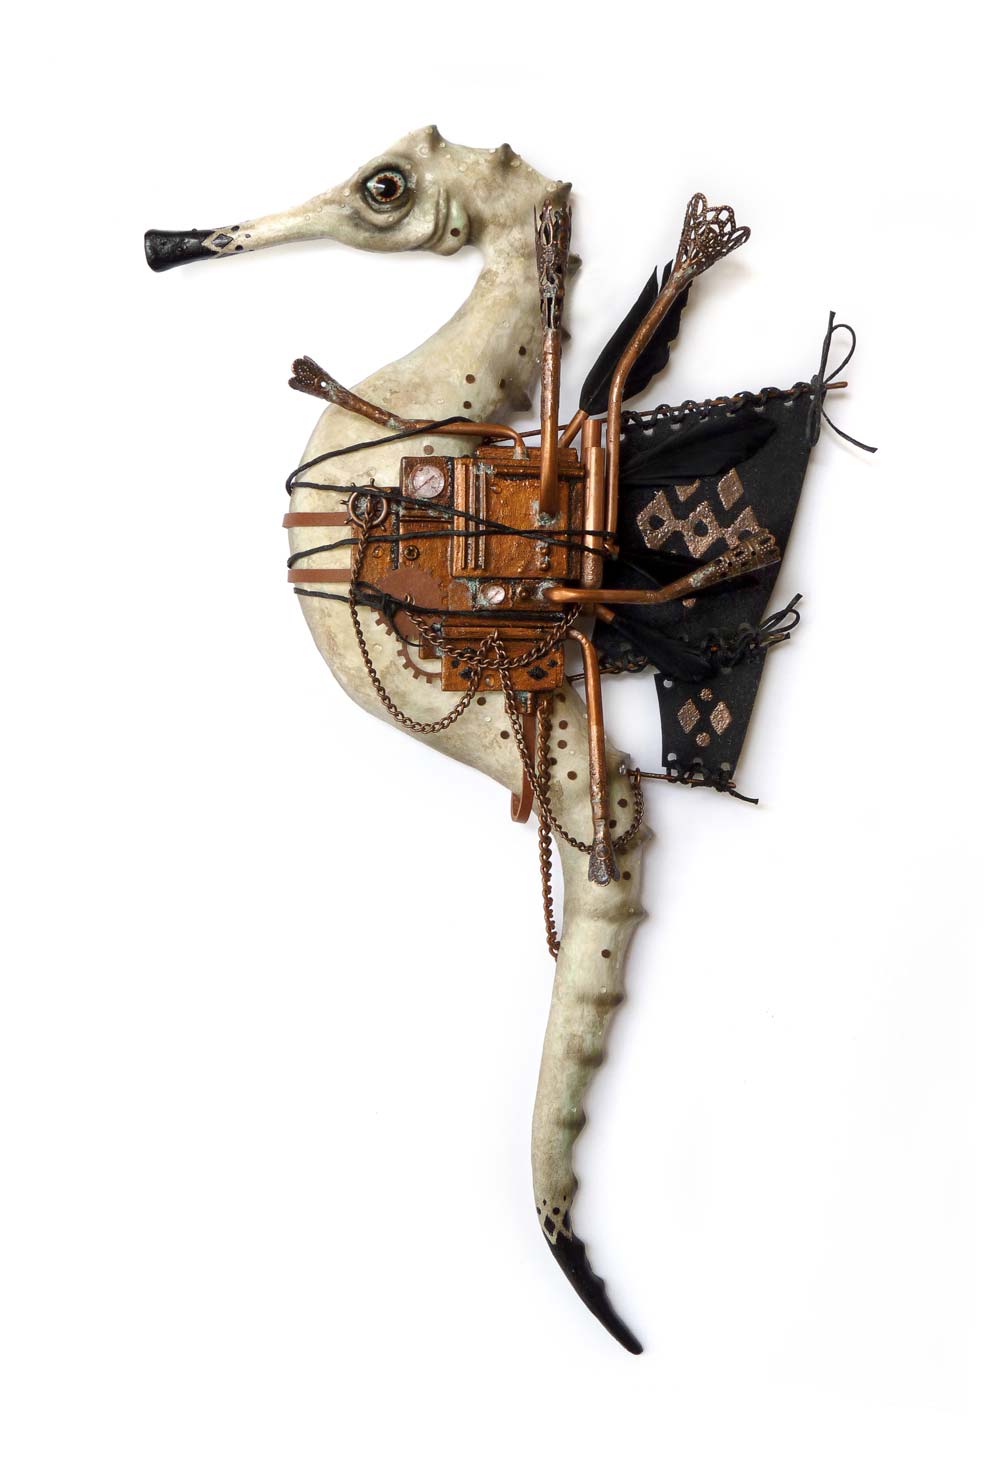 A mechanical pipefish seahorse steampunk machine